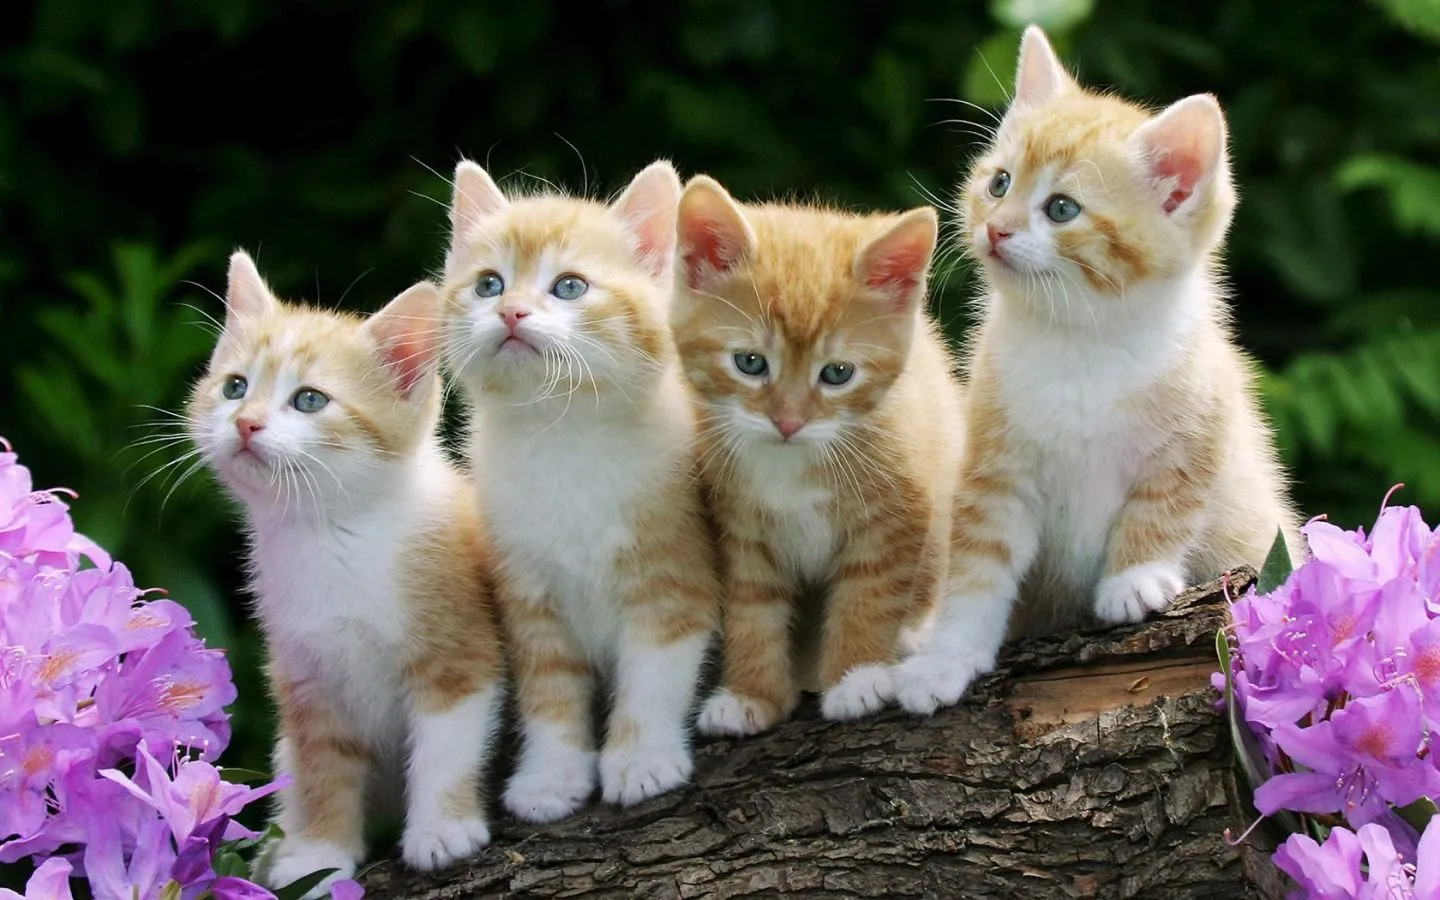 Compartiendo Fondos: fondos de gatitos tiernos